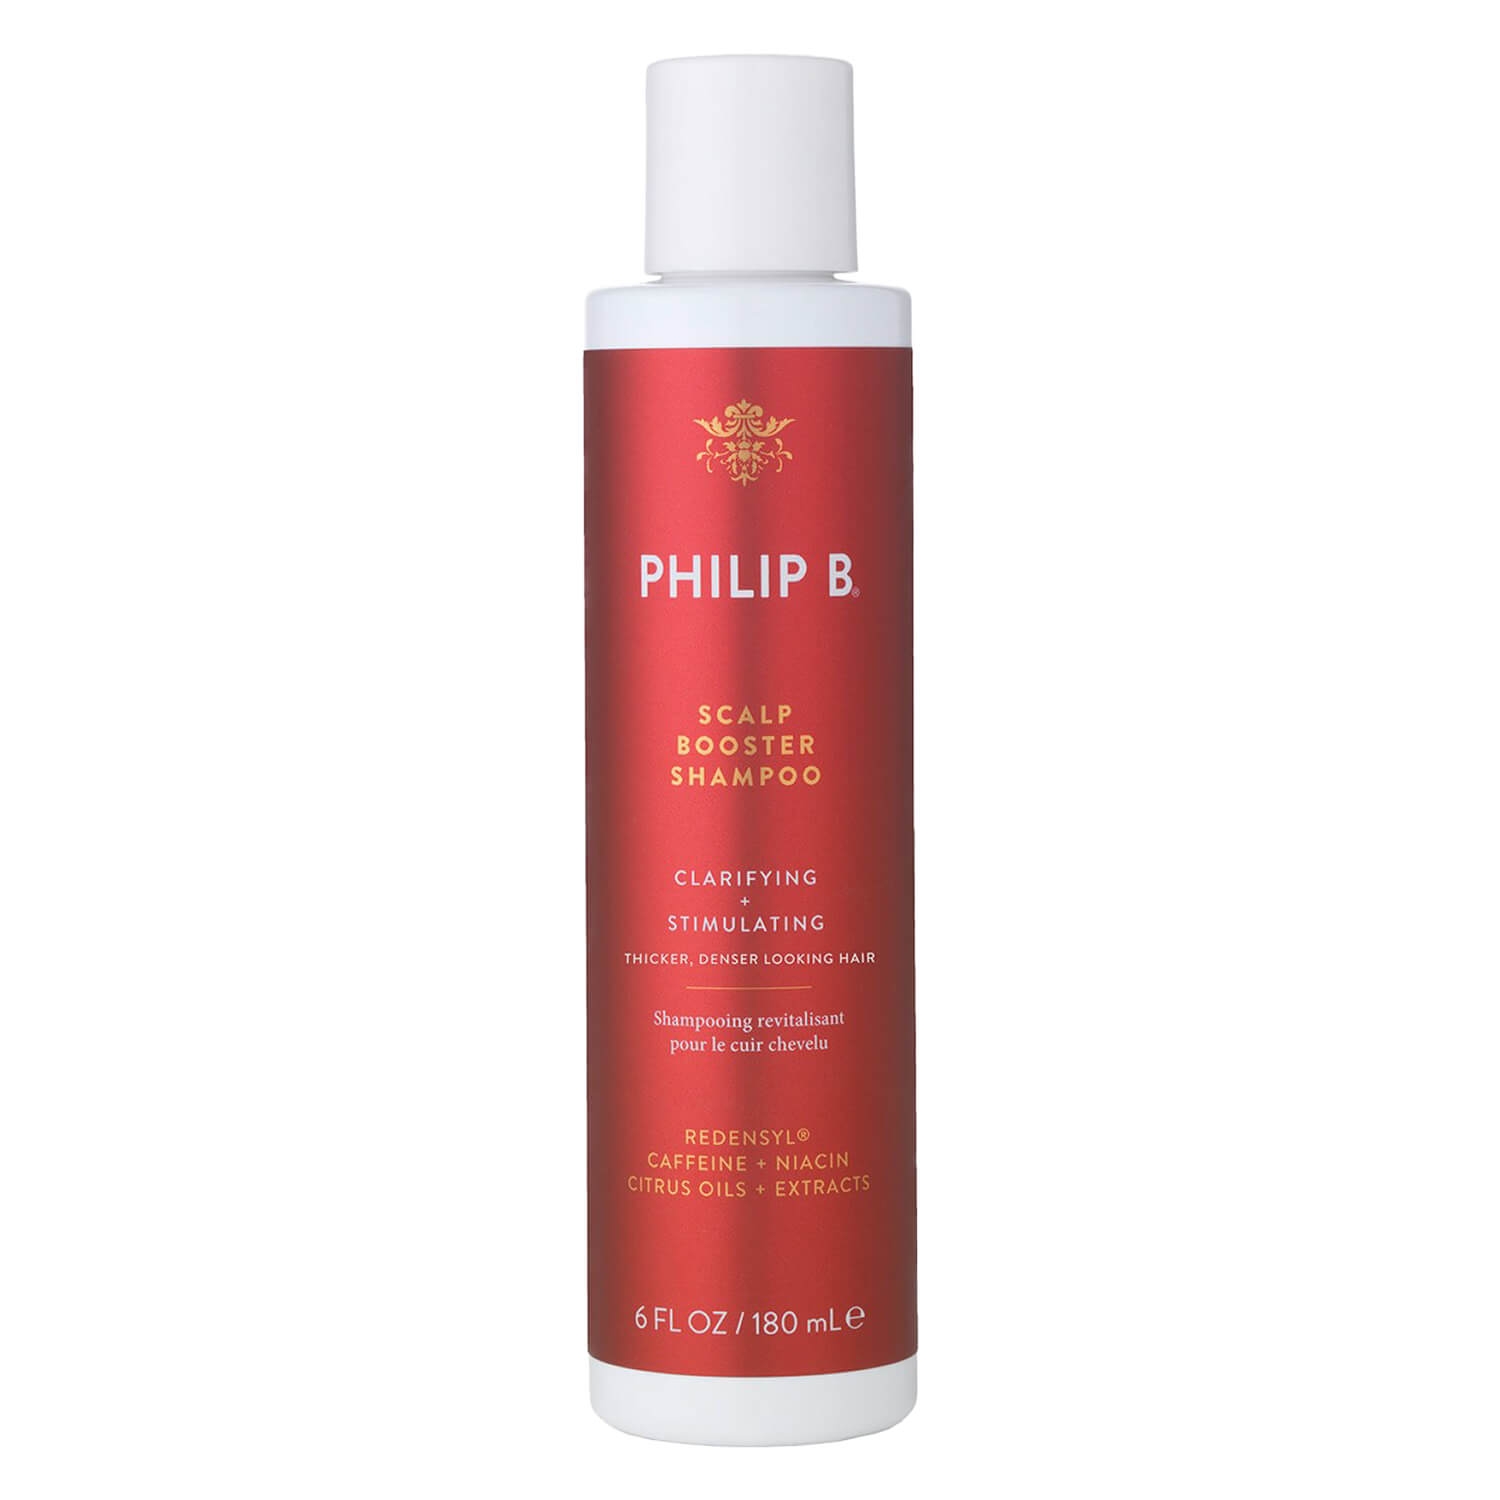 Produktbild von Philip B - Scalp Booster Shampoo